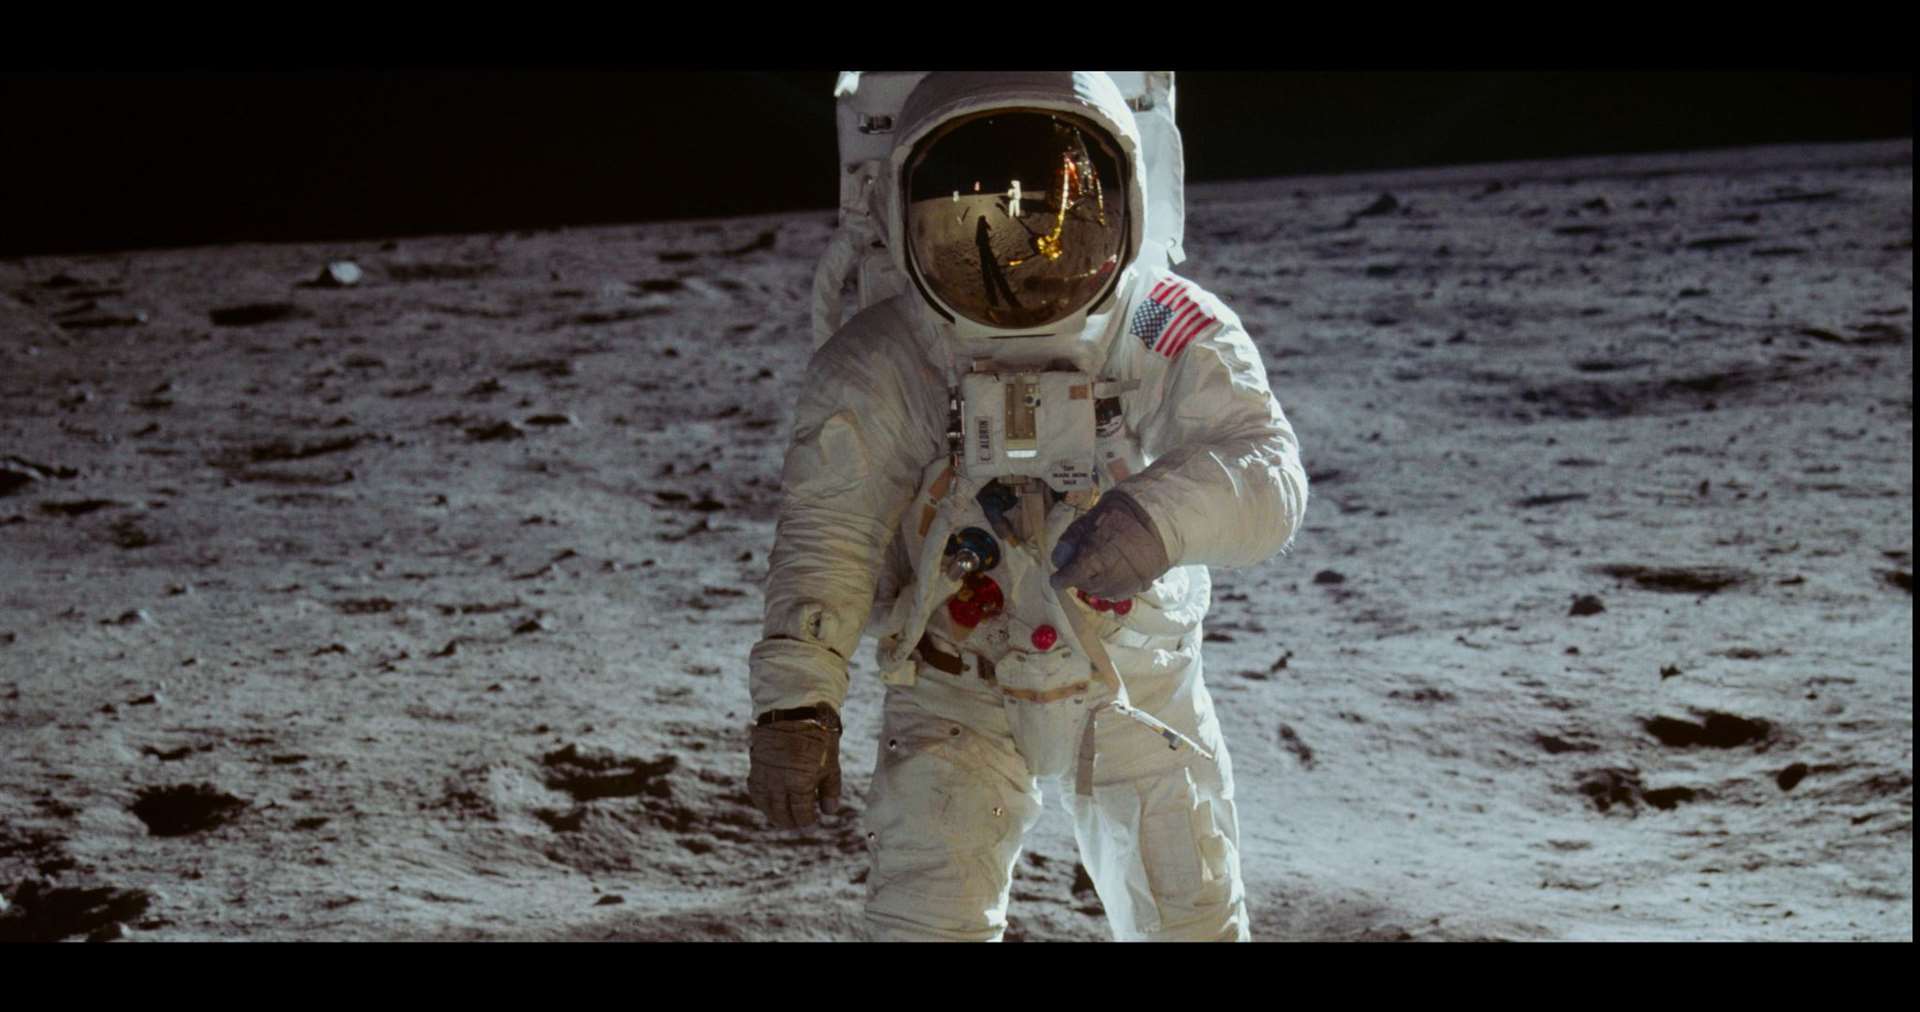 The moon landing in 1969